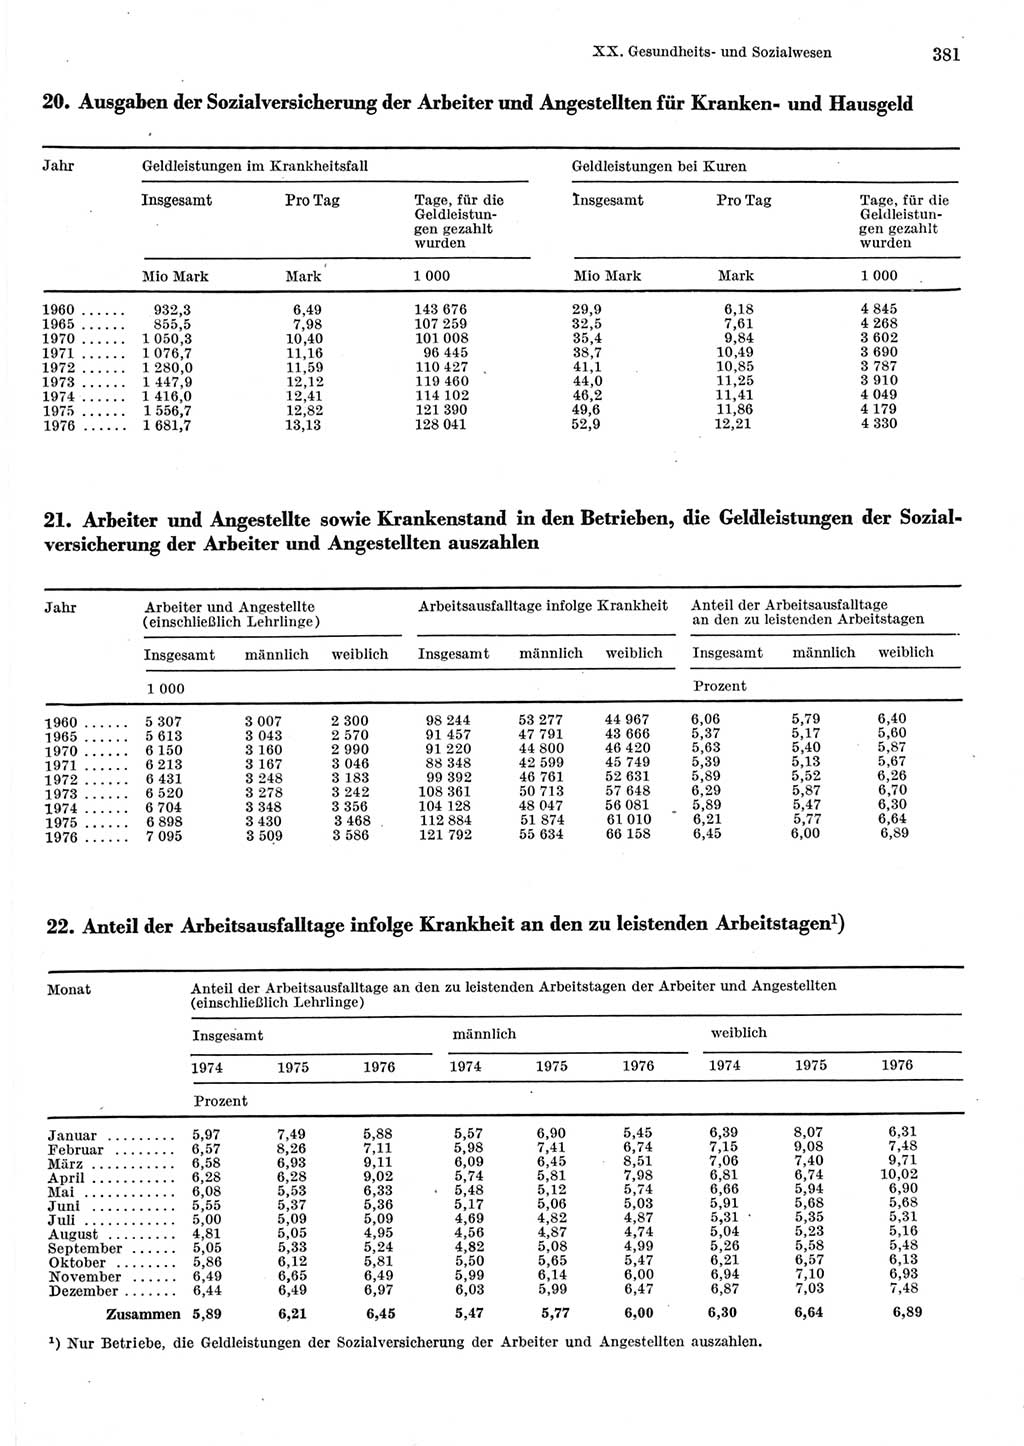 Statistisches Jahrbuch der Deutschen Demokratischen Republik (DDR) 1977, Seite 381 (Stat. Jb. DDR 1977, S. 381)